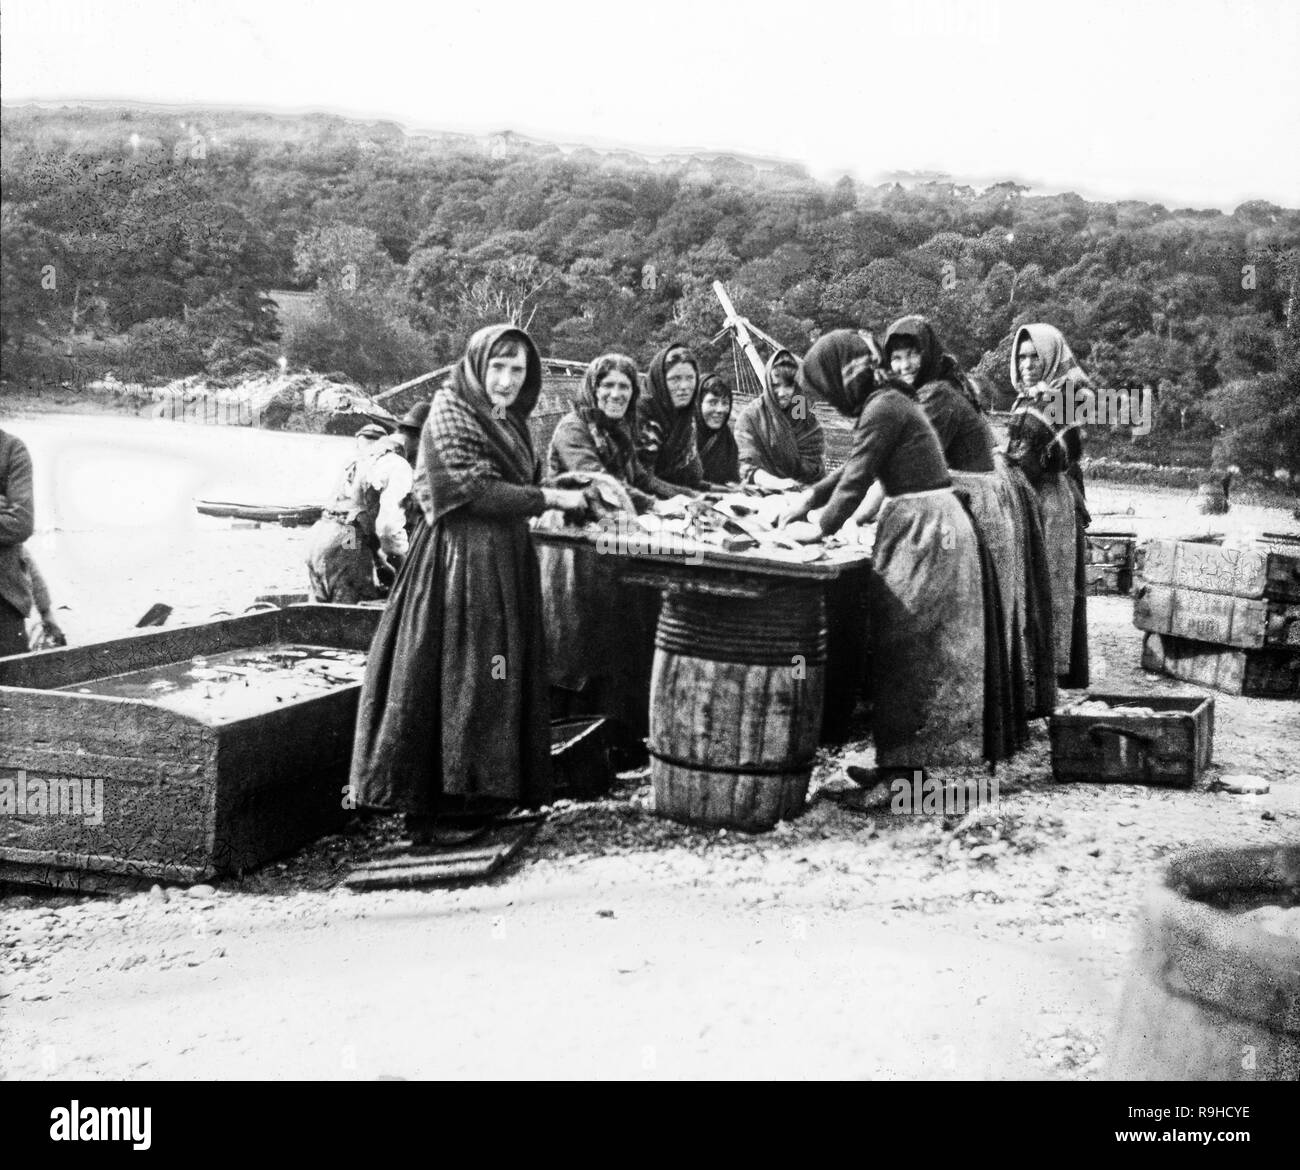 Vintage in bianco e nero fotografia scattata nel 1893 che mostra un gruppo di fishwives; donne che preparano e filetto di pesce pescato dai pescatori locali. Fotografia scattata in Inghilterra. Foto Stock